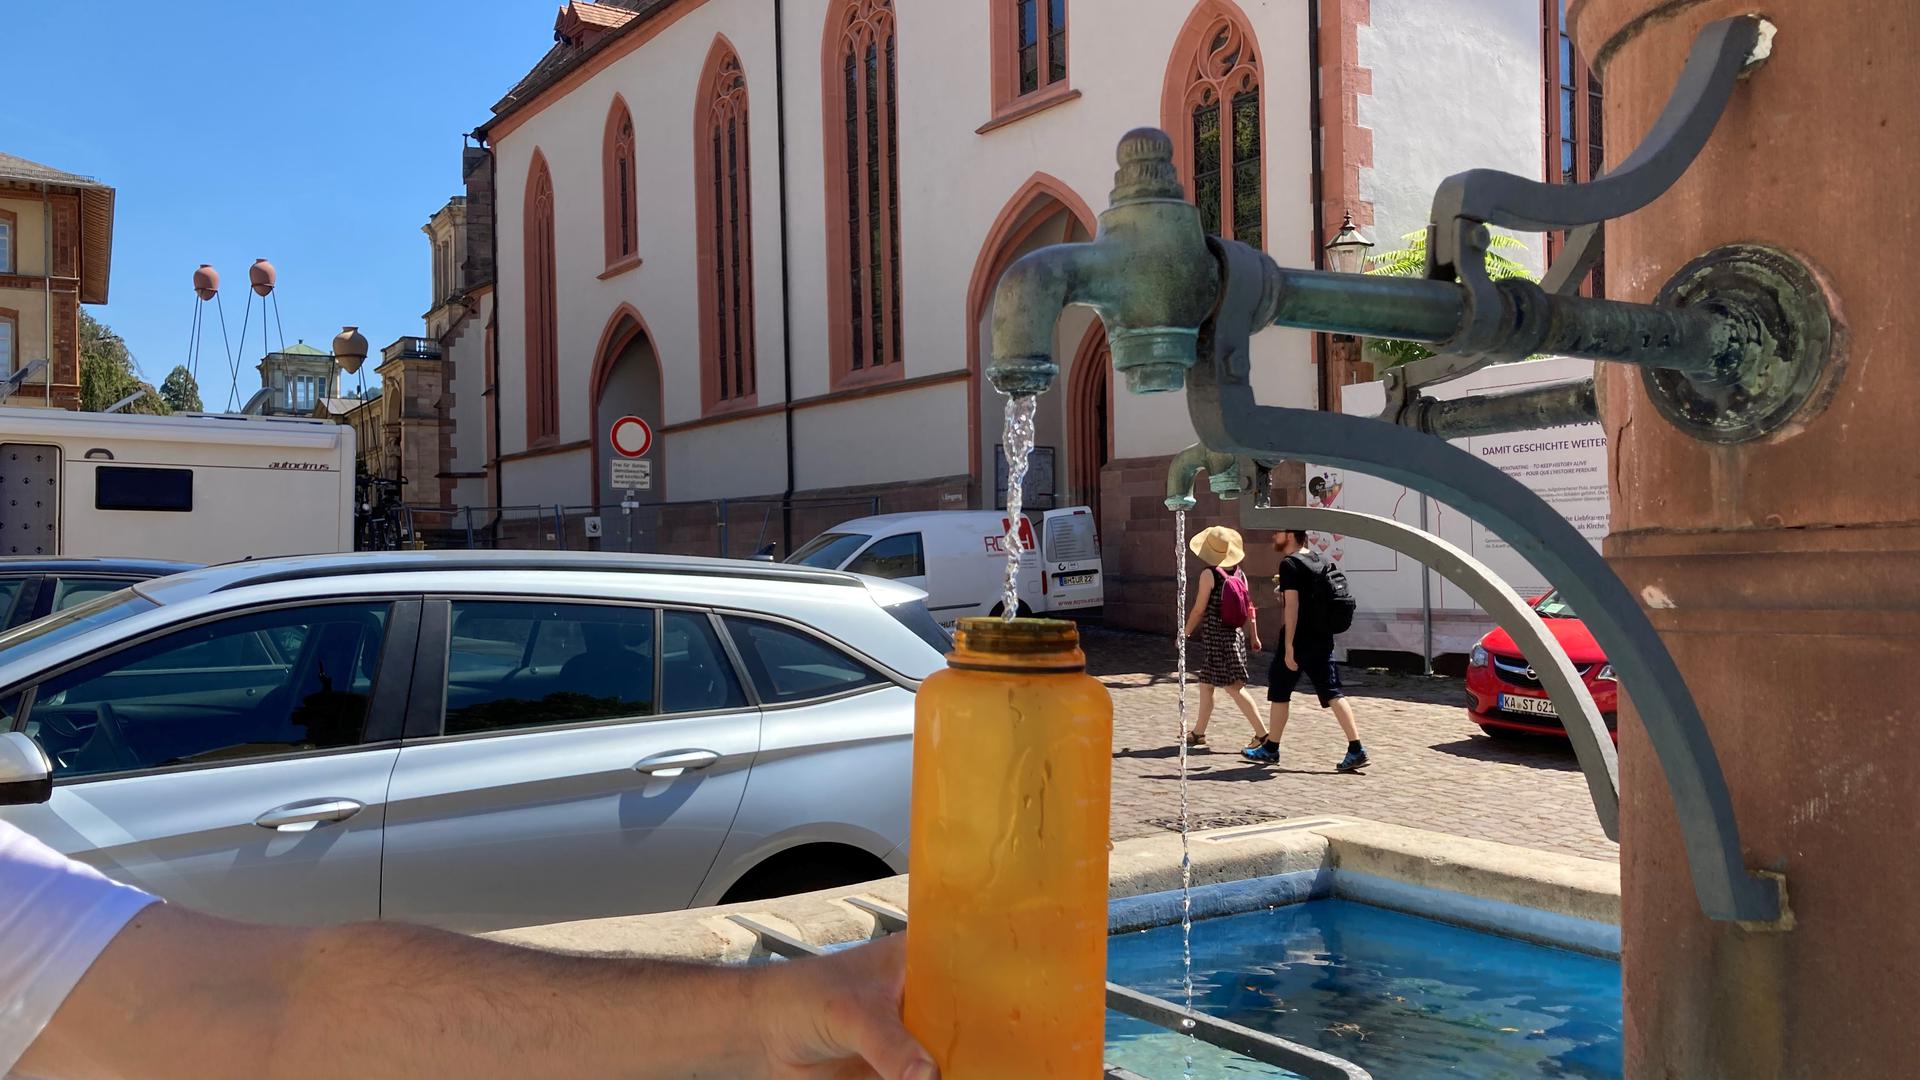 Vermutlich einer der künftigen Trinkbrunnen in Baden-Baden: Der Marktplatzbrunnen liefert sauberes Trinkwasser.